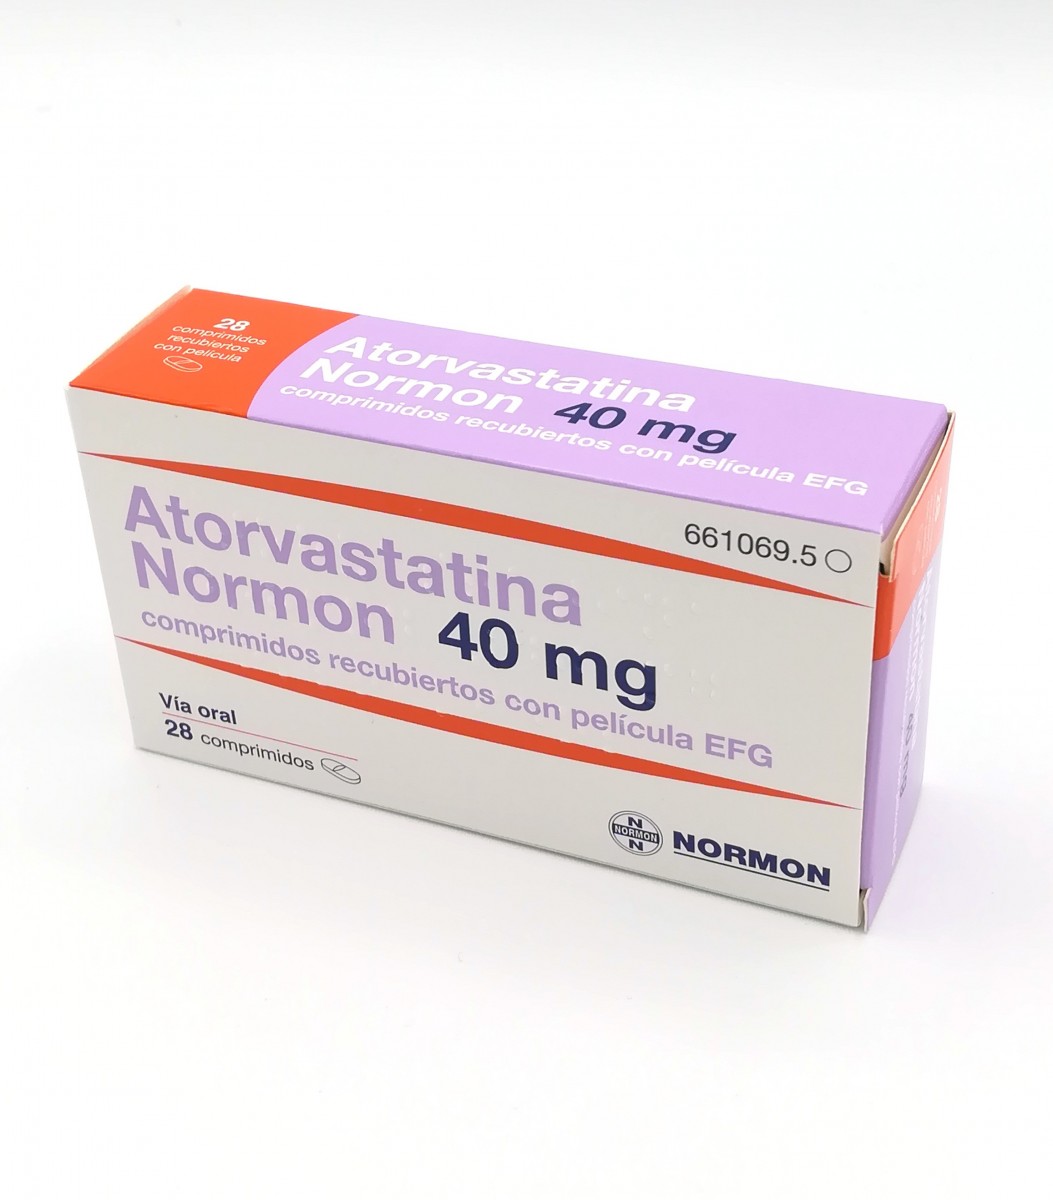 ATORVASTATINA NORMON 40 mg COMPRIMIDOS RECUBIERTOS CON PELICULA EFG , 28 comprimidos fotografía del envase.